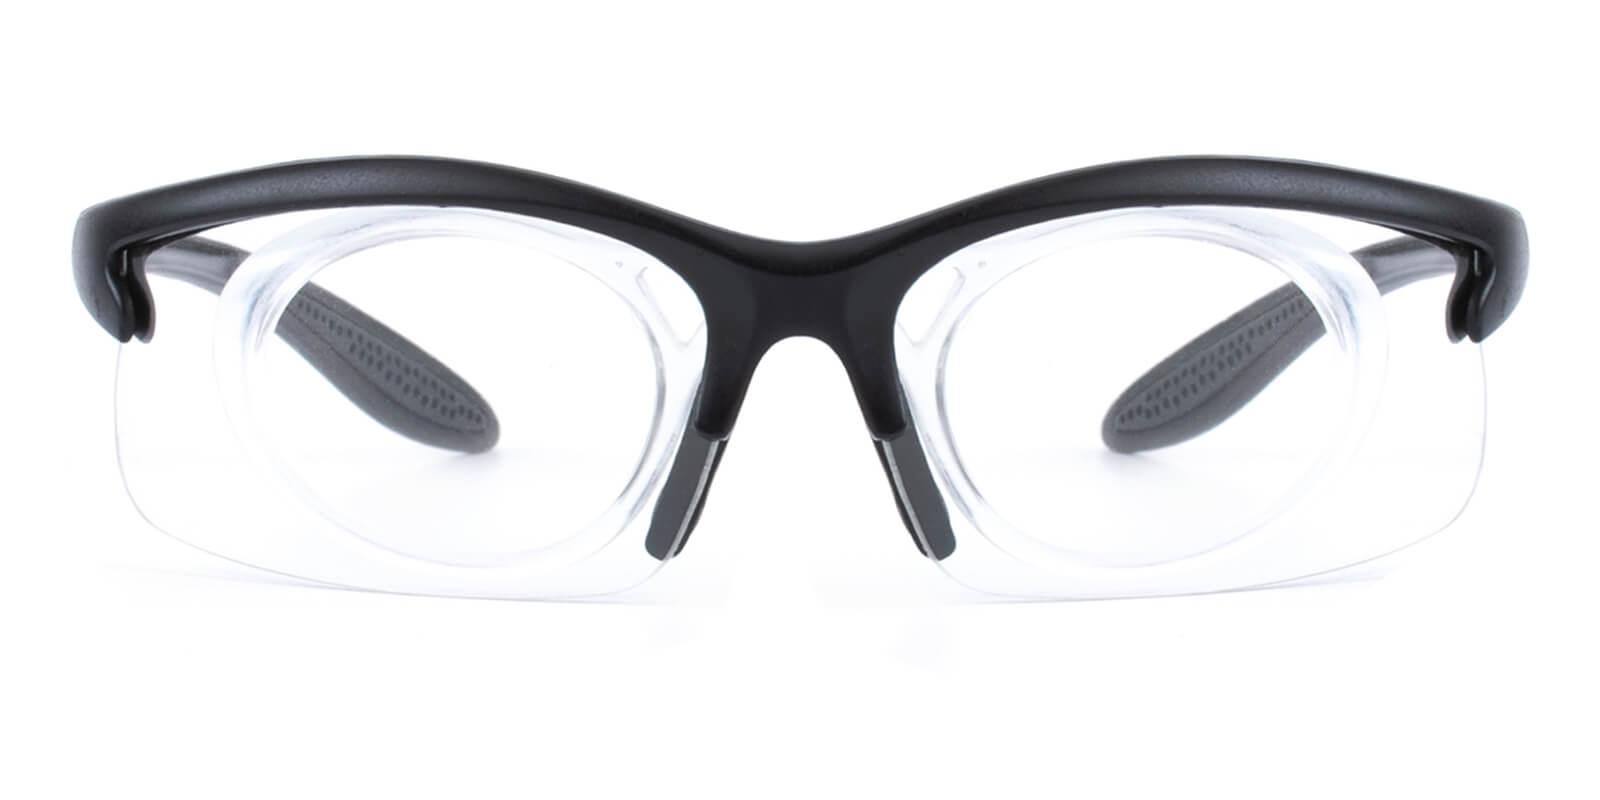 Windrise-Translucent-Square-Plastic-SportsGlasses-detail